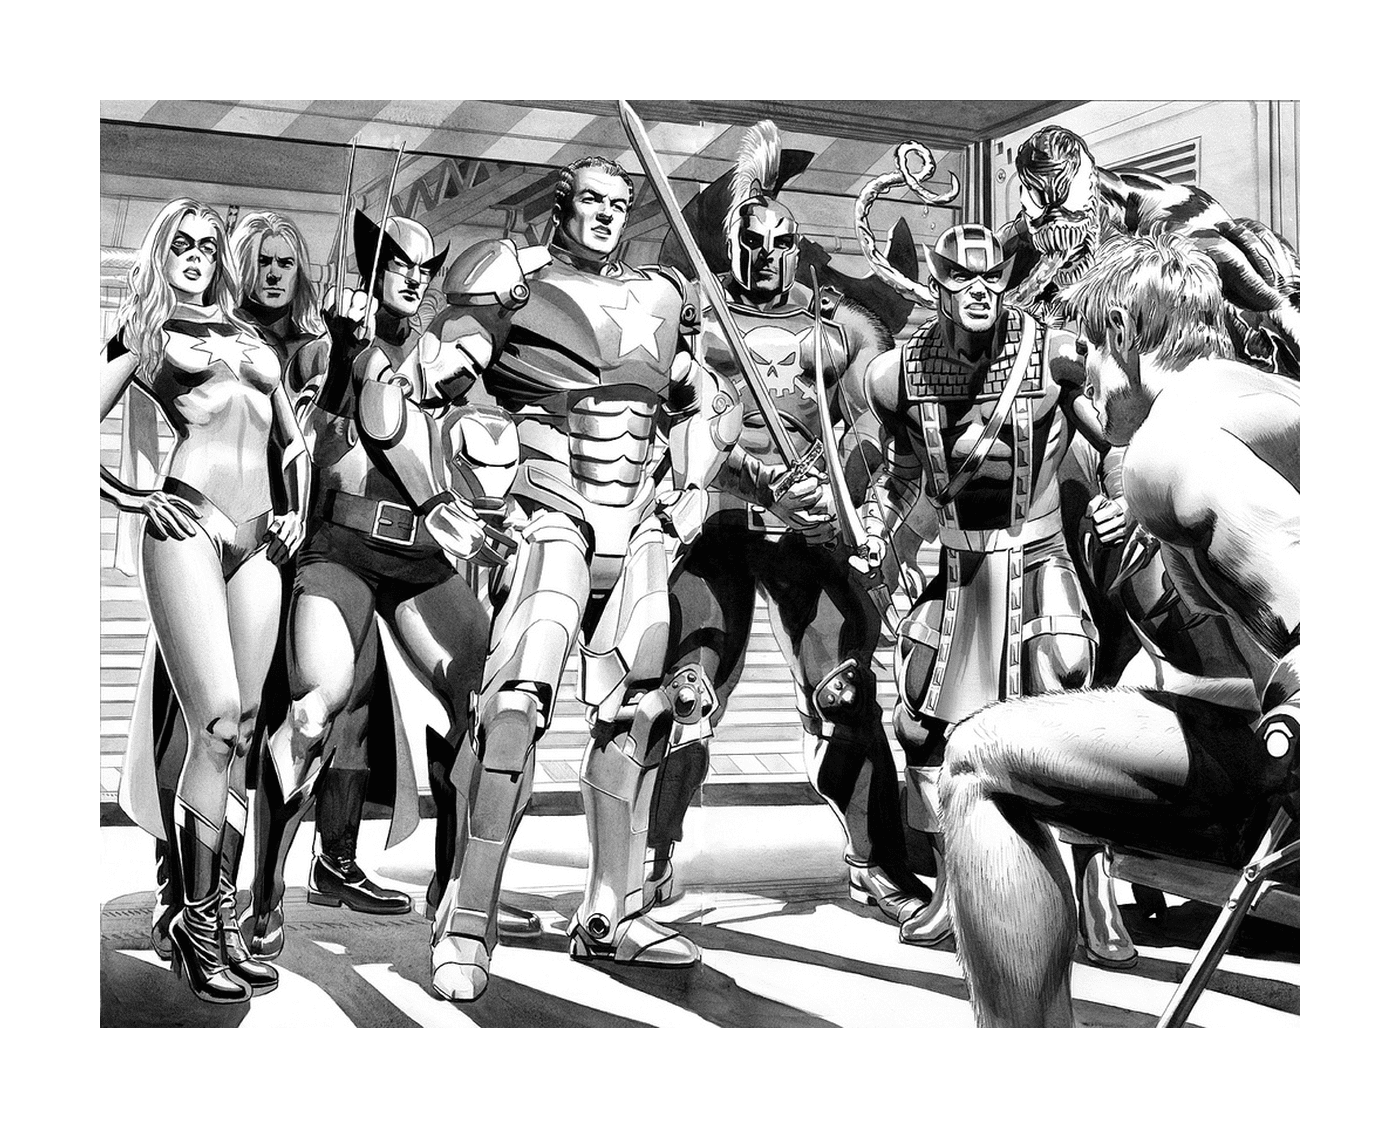   Une photographie en noir et blanc d'un groupe de super-héros 